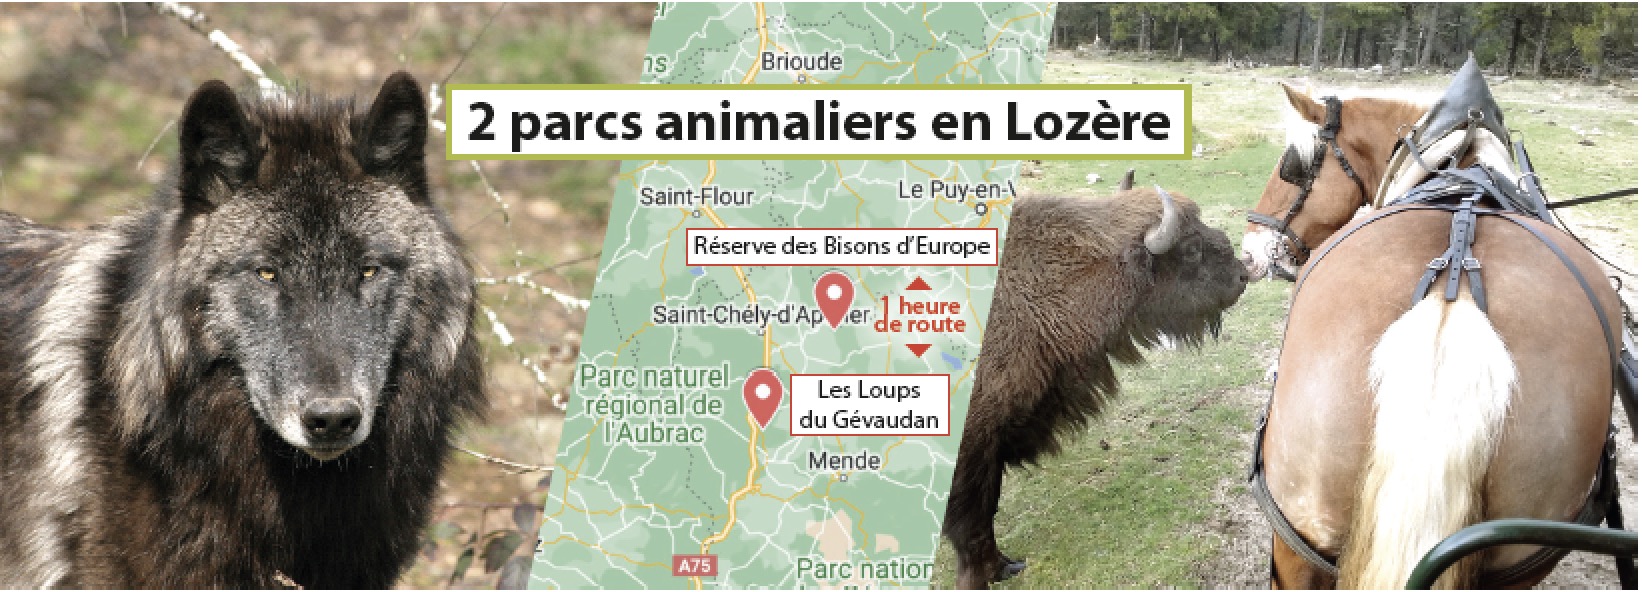 Loups du Gevaudan et Réserve des Bisons d’Europe